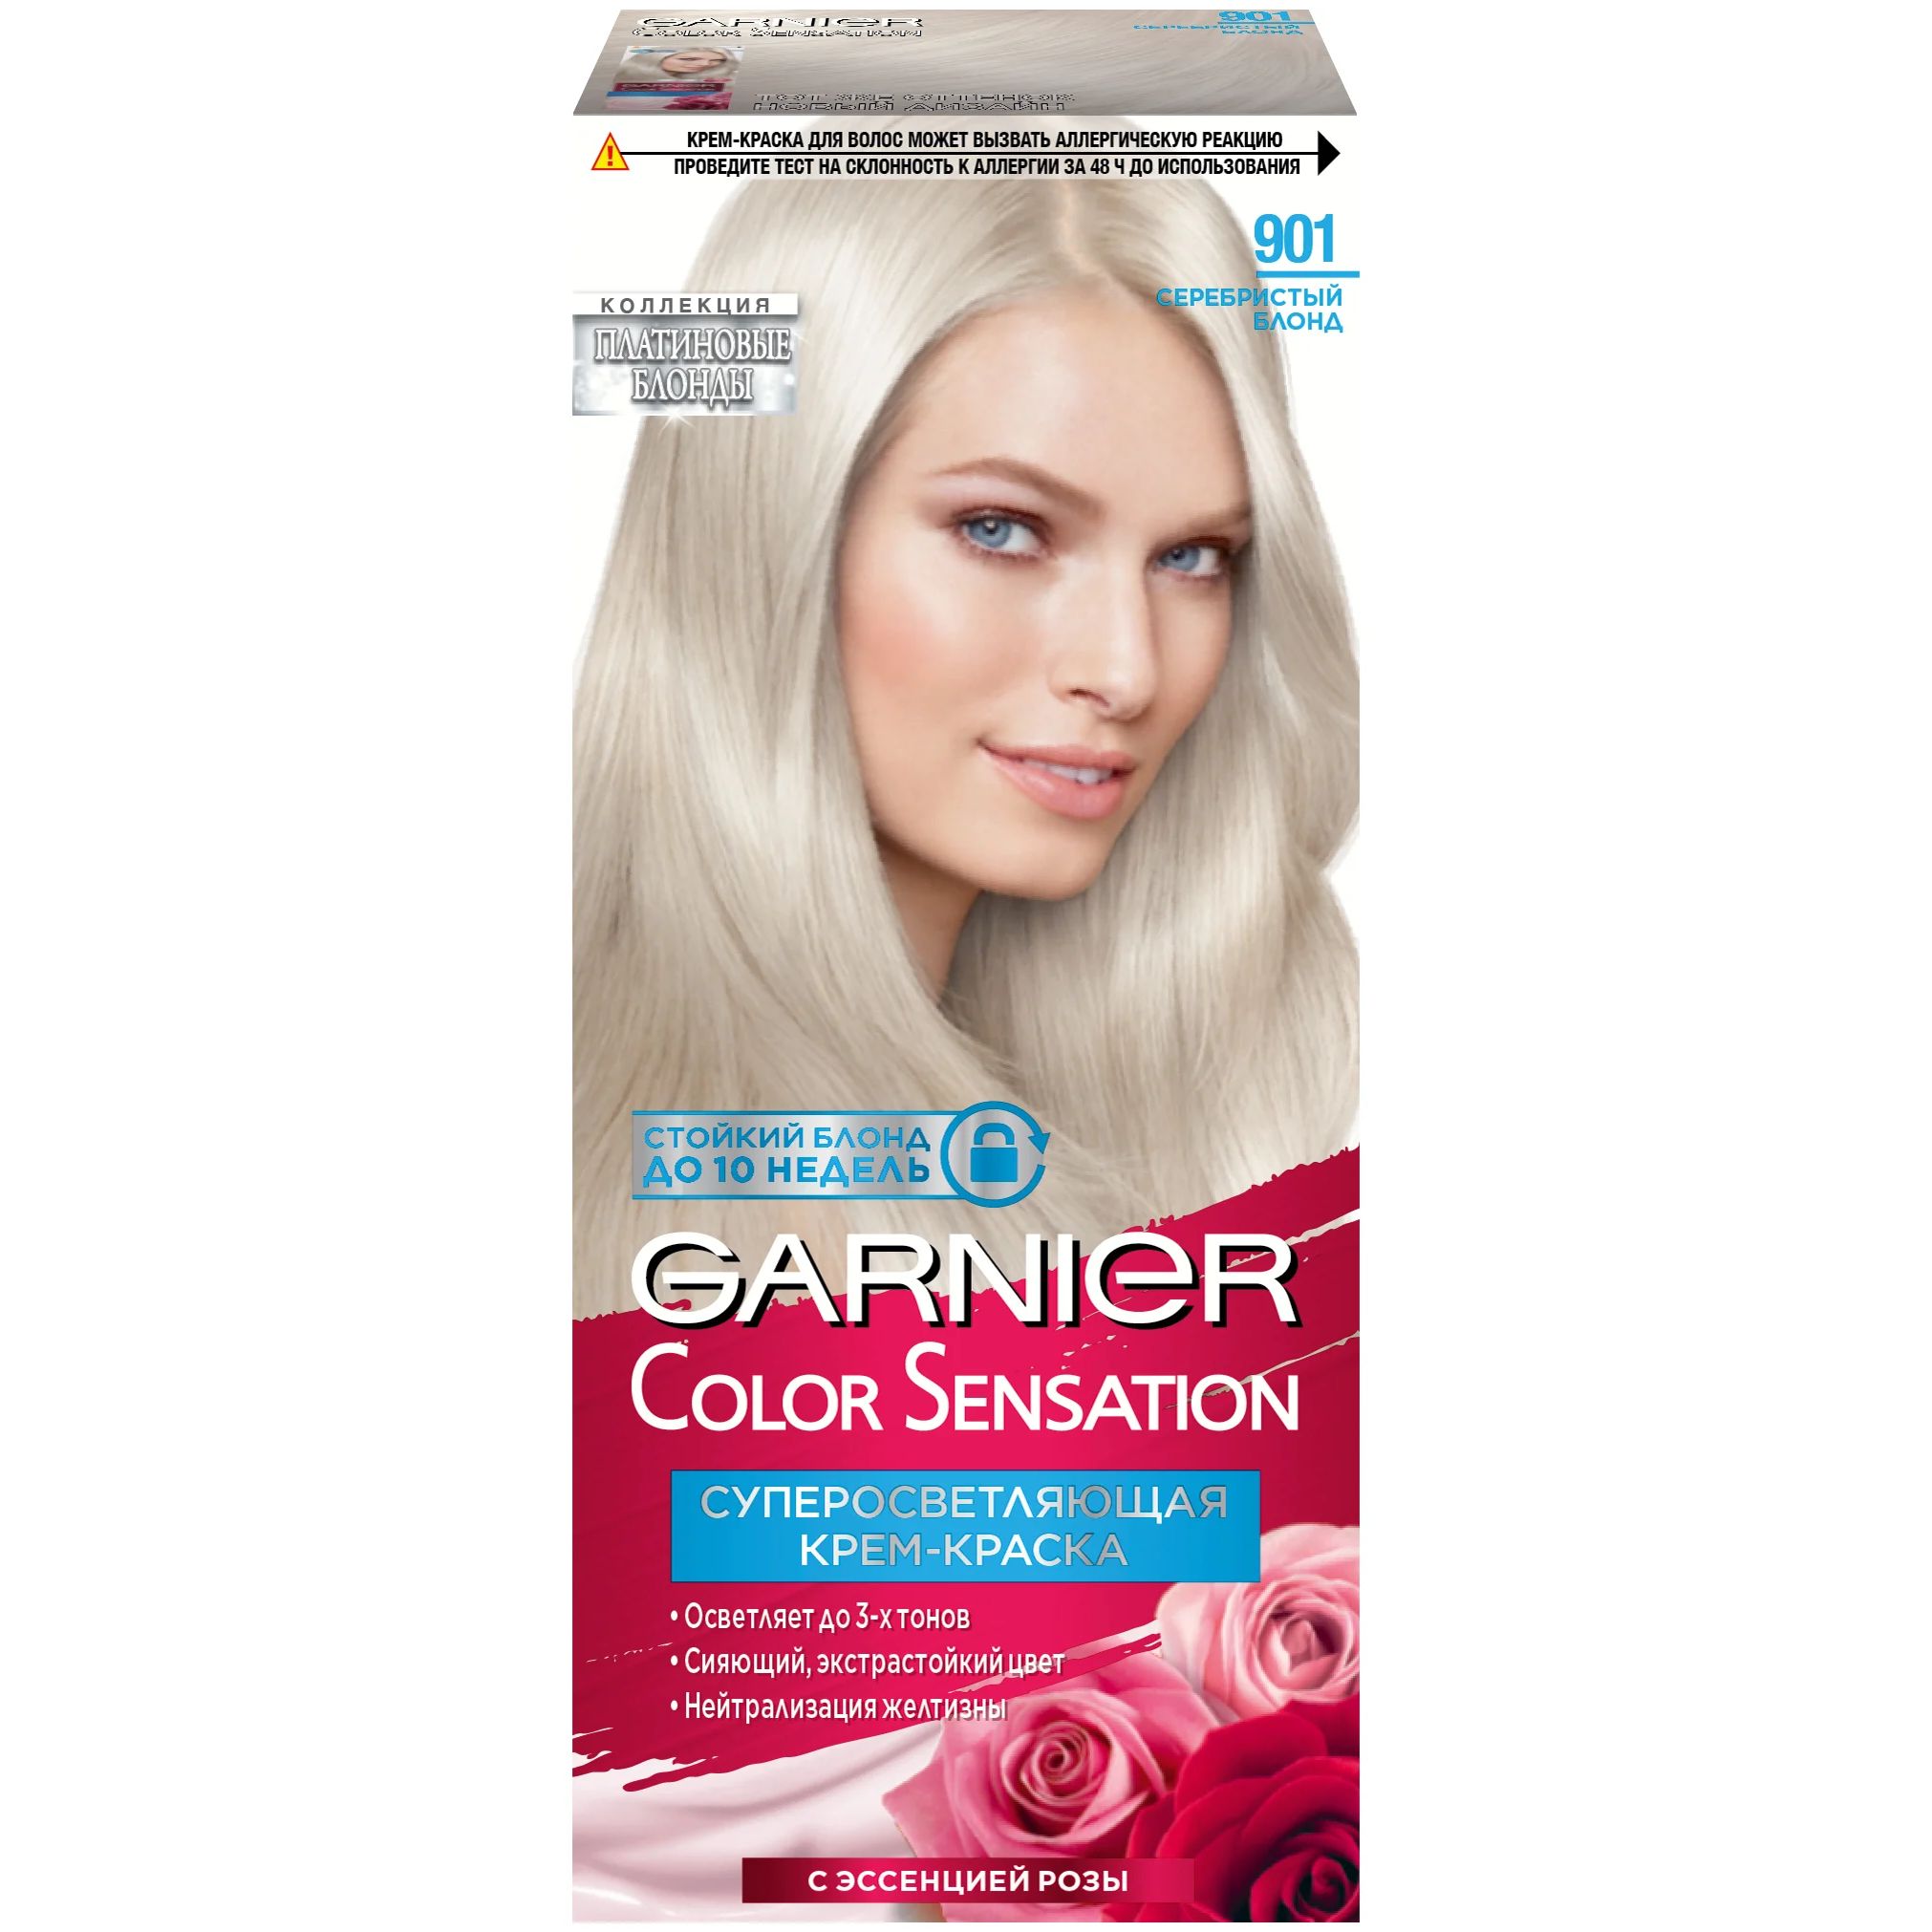 Крем-краска для волос Garnier Color Sensation 901 Серебристый Блонд la savonnerie de nyons крем для рук с молочком ослицы 30